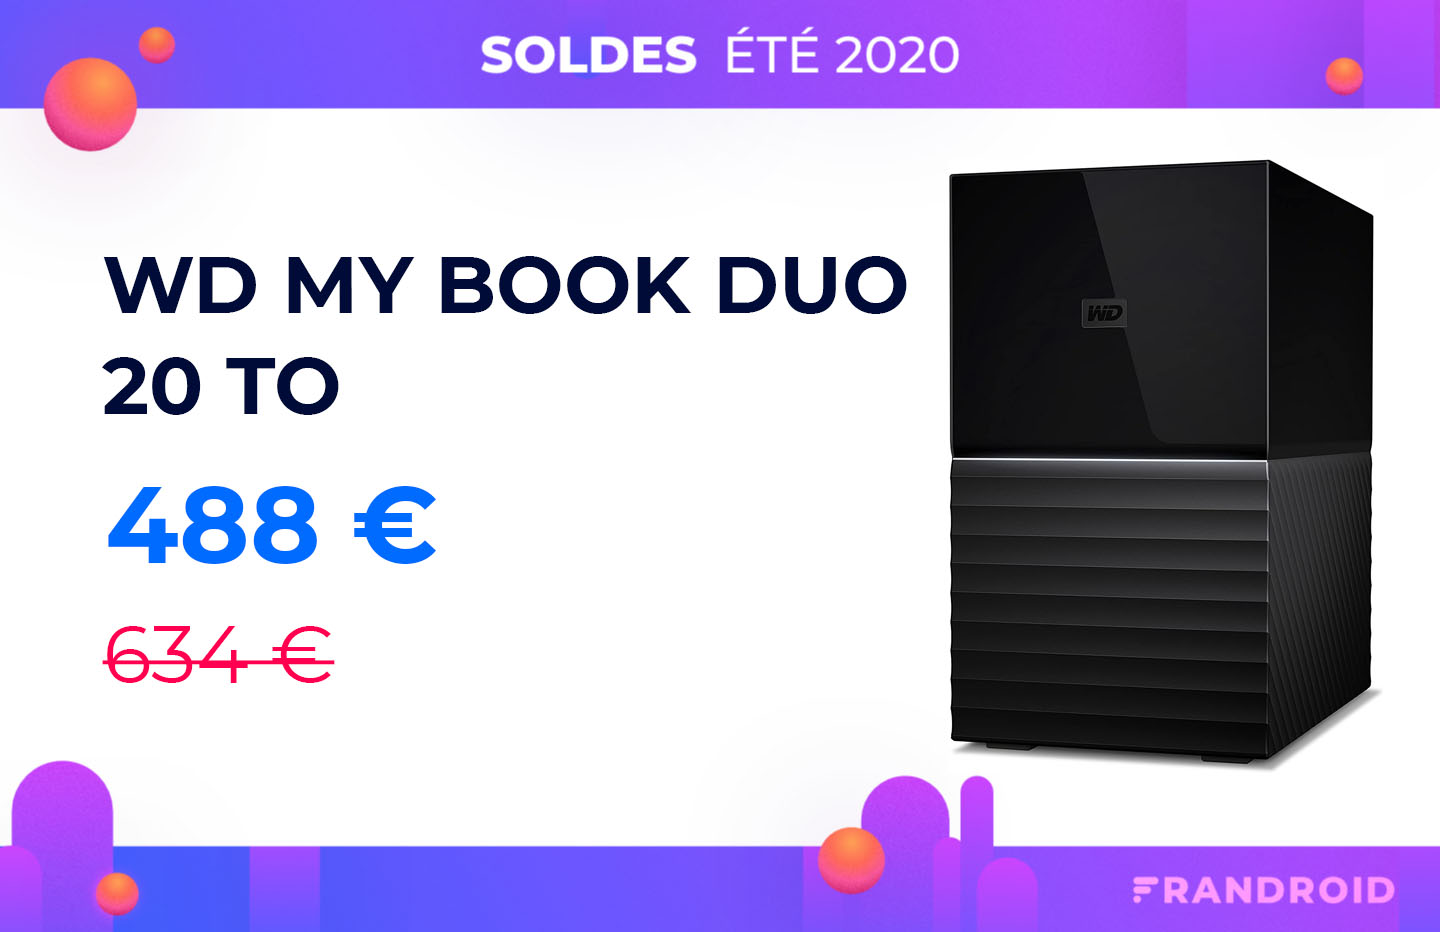 Moins de 40€ pour ce disque dur externe 2 To, l'offre est dingue